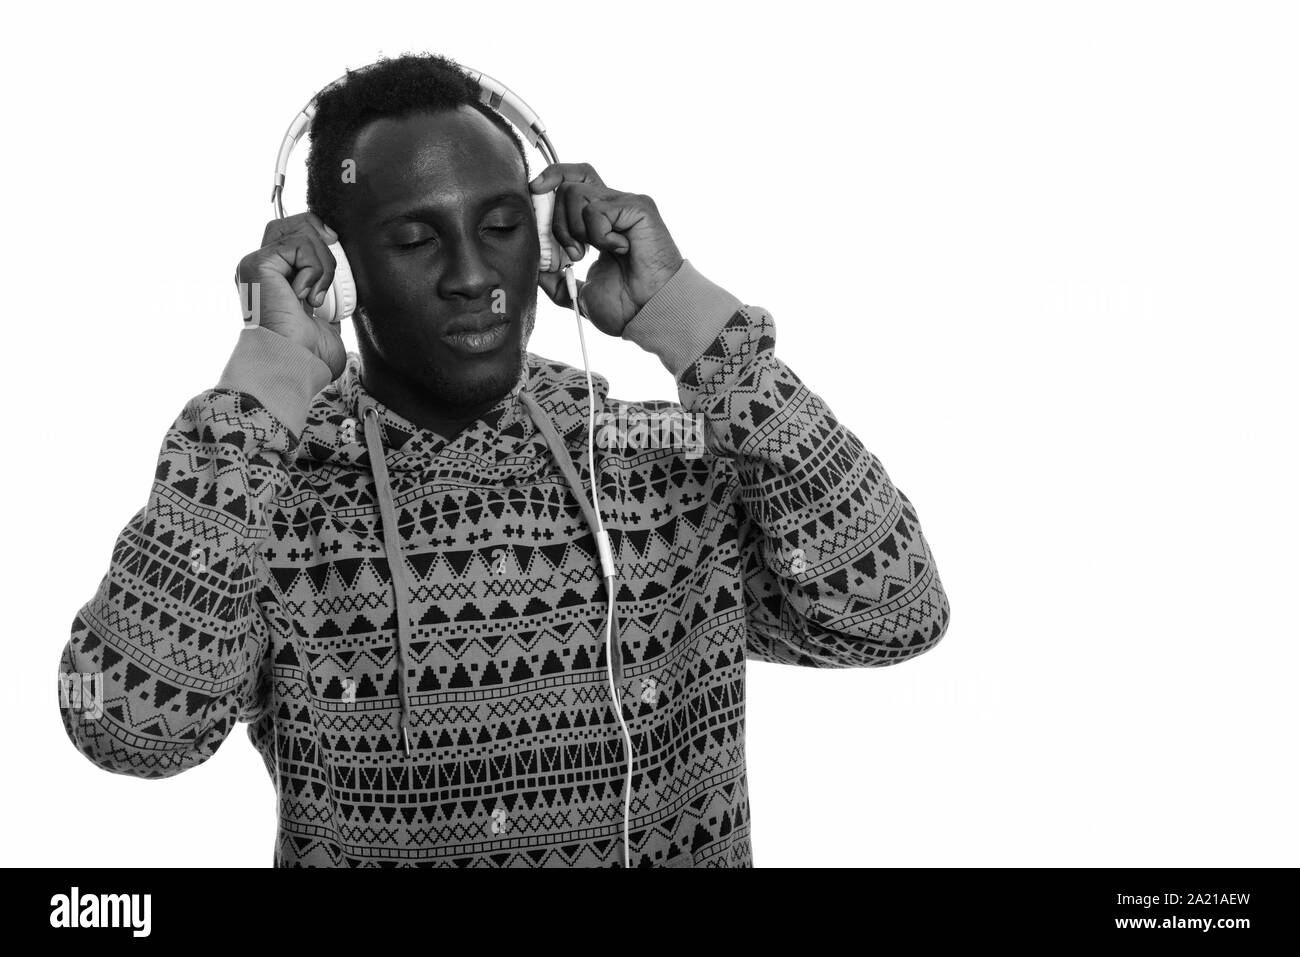 Jeune homme noir africain à écouter de la musique avec les yeux fermé Banque D'Images